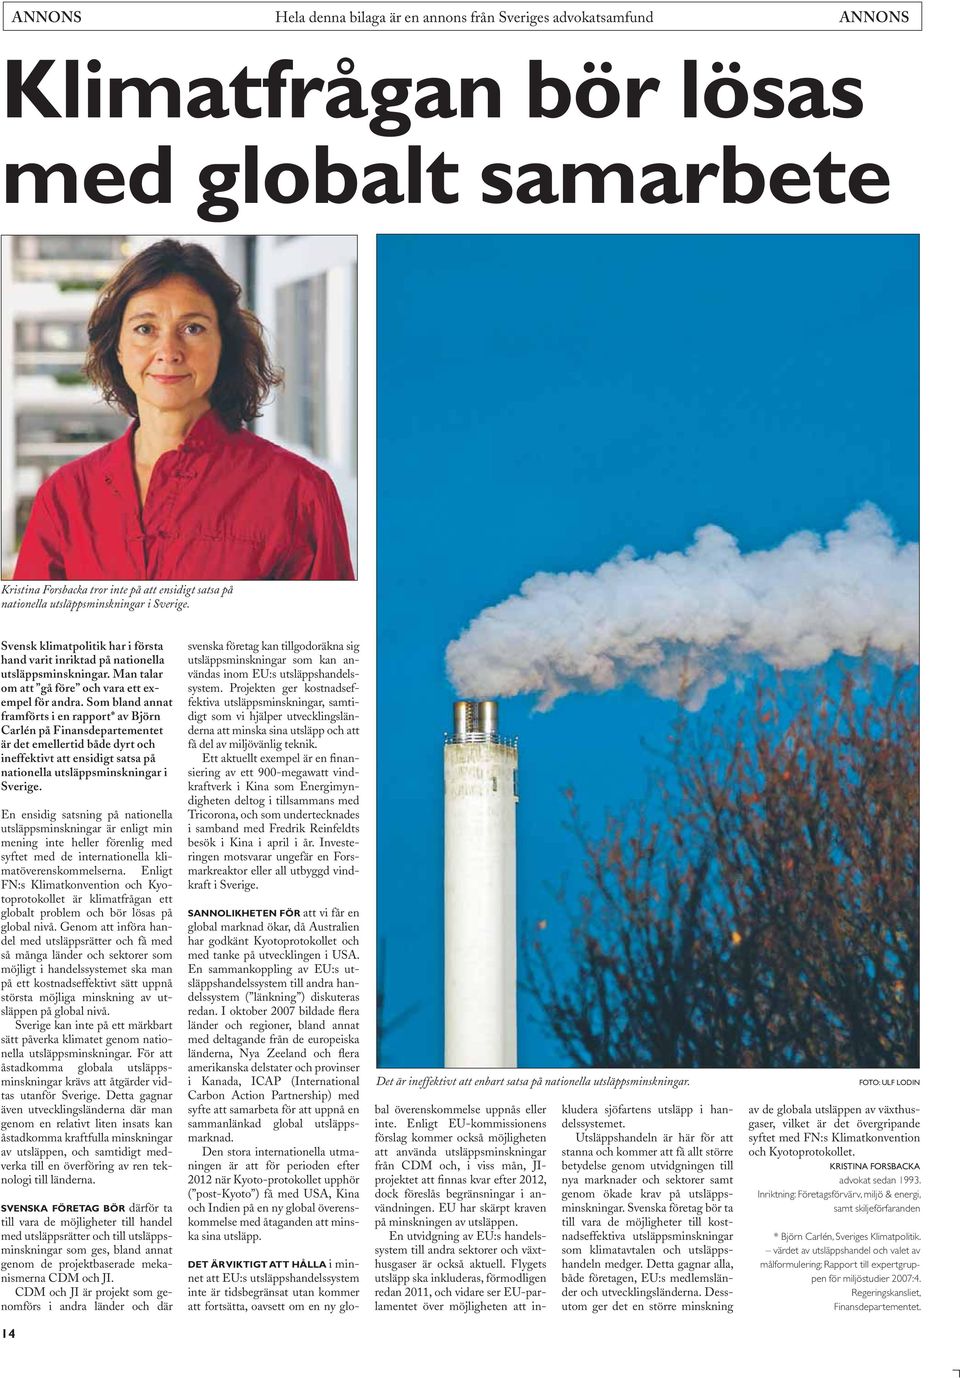 Som bland annat framförts i en rapport* av Björn Carlén på Finansdepartementet är det emellertid både dyrt och ineffektivt att ensidigt satsa på nationella utsläppsminskningar i Sverige.